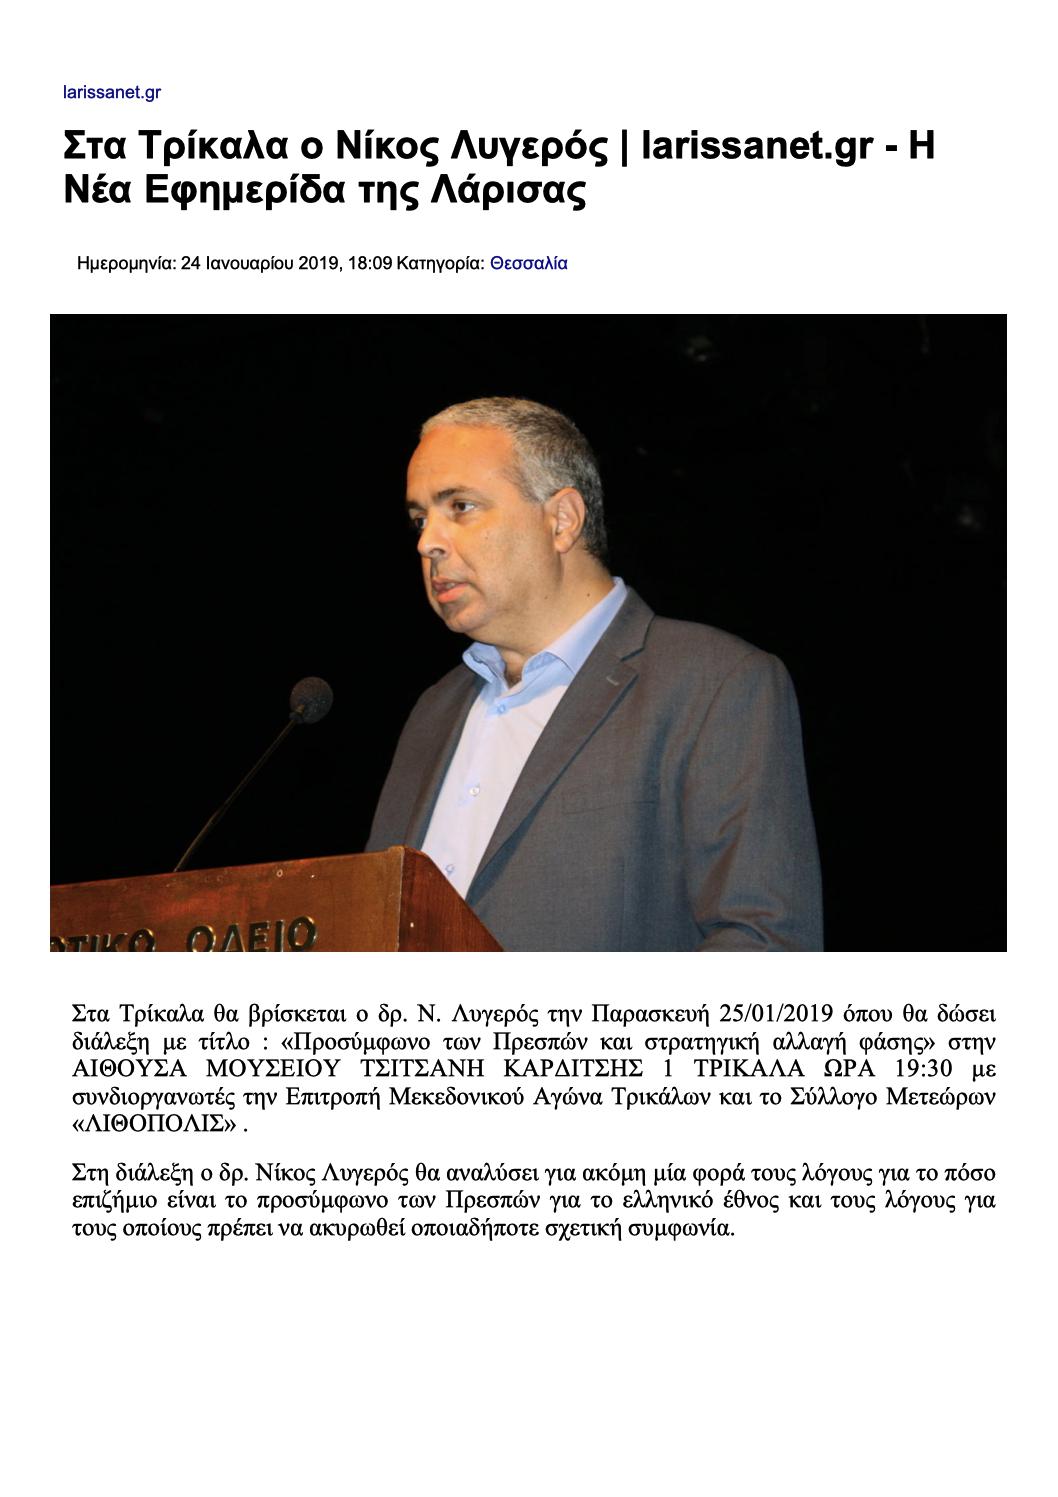 Στα Τρίκαλα ο Νίκος Λυγερός, Larissanet.gr, 24/01/2019 - Publication